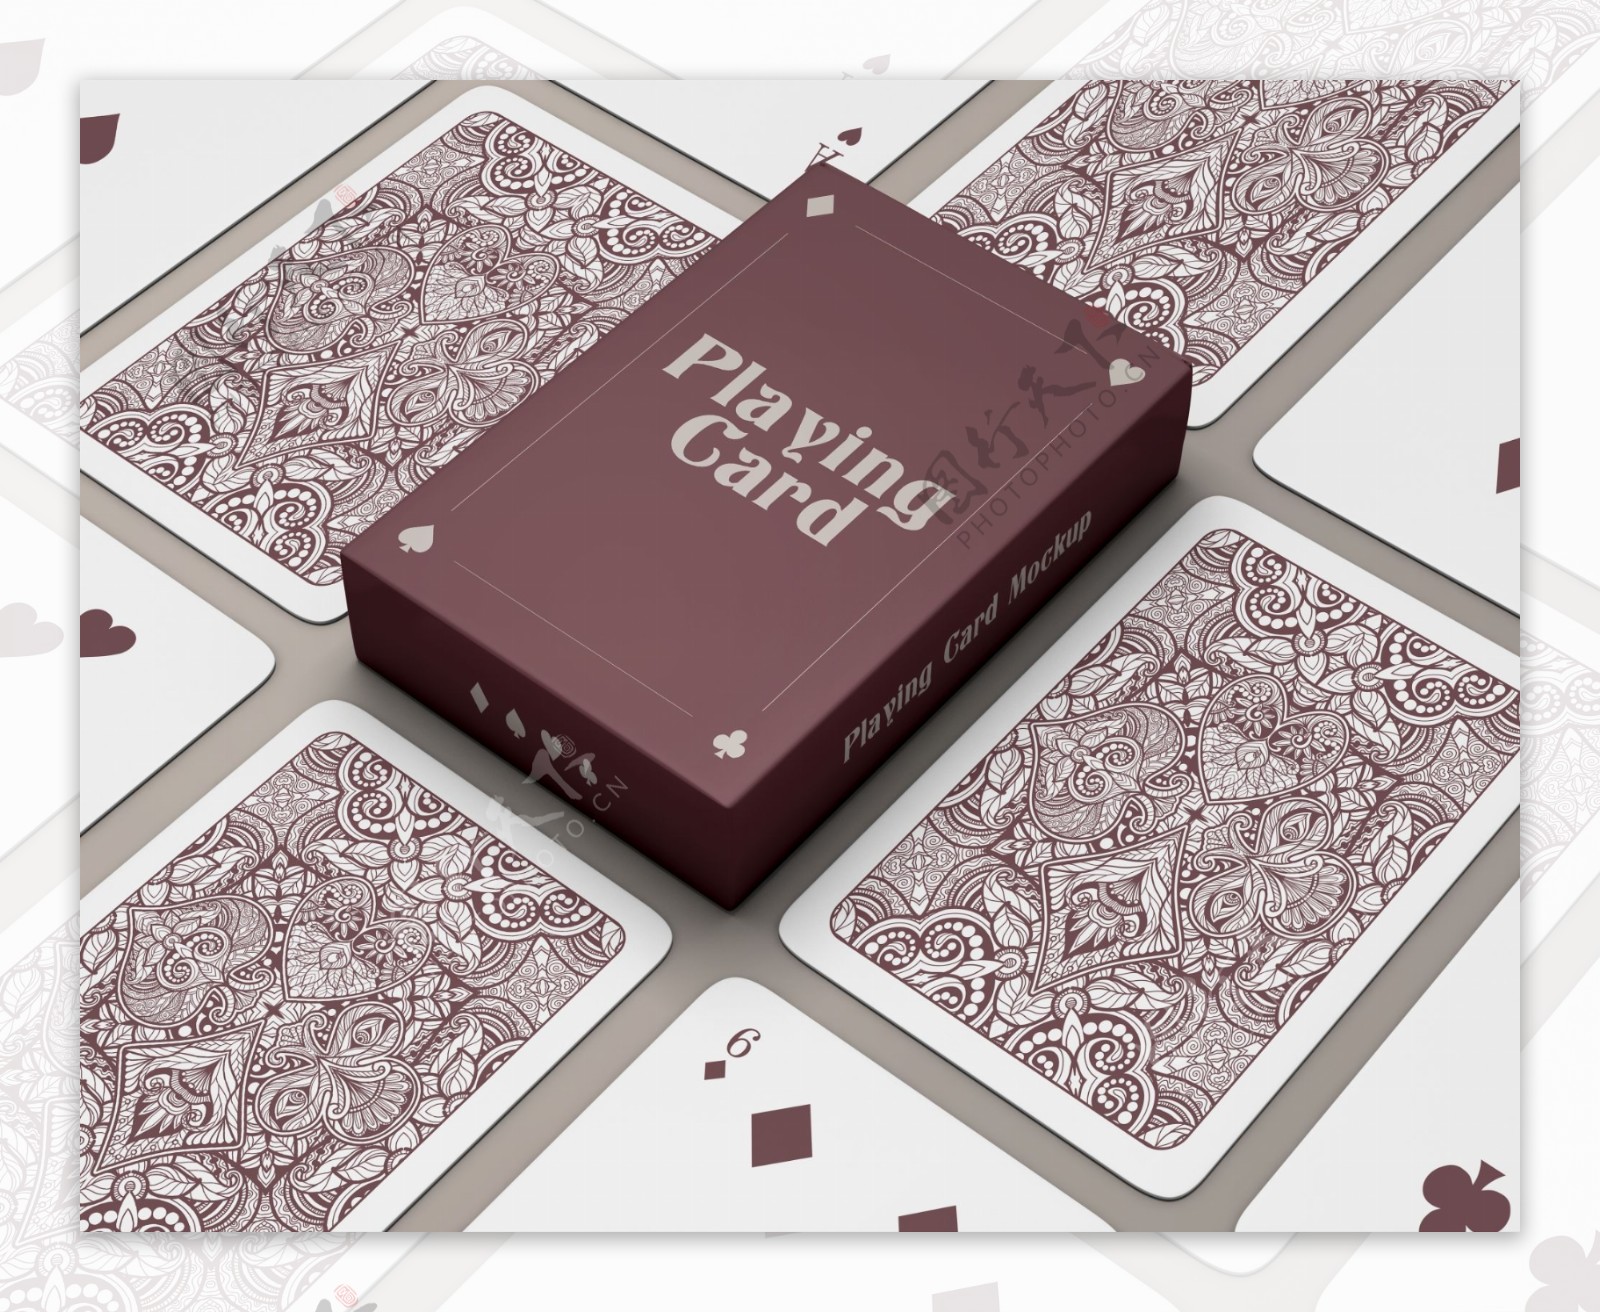 游戏扑克牌盒子设计样机素材 Set Box with Playing Cards Mockup – 设计小咖